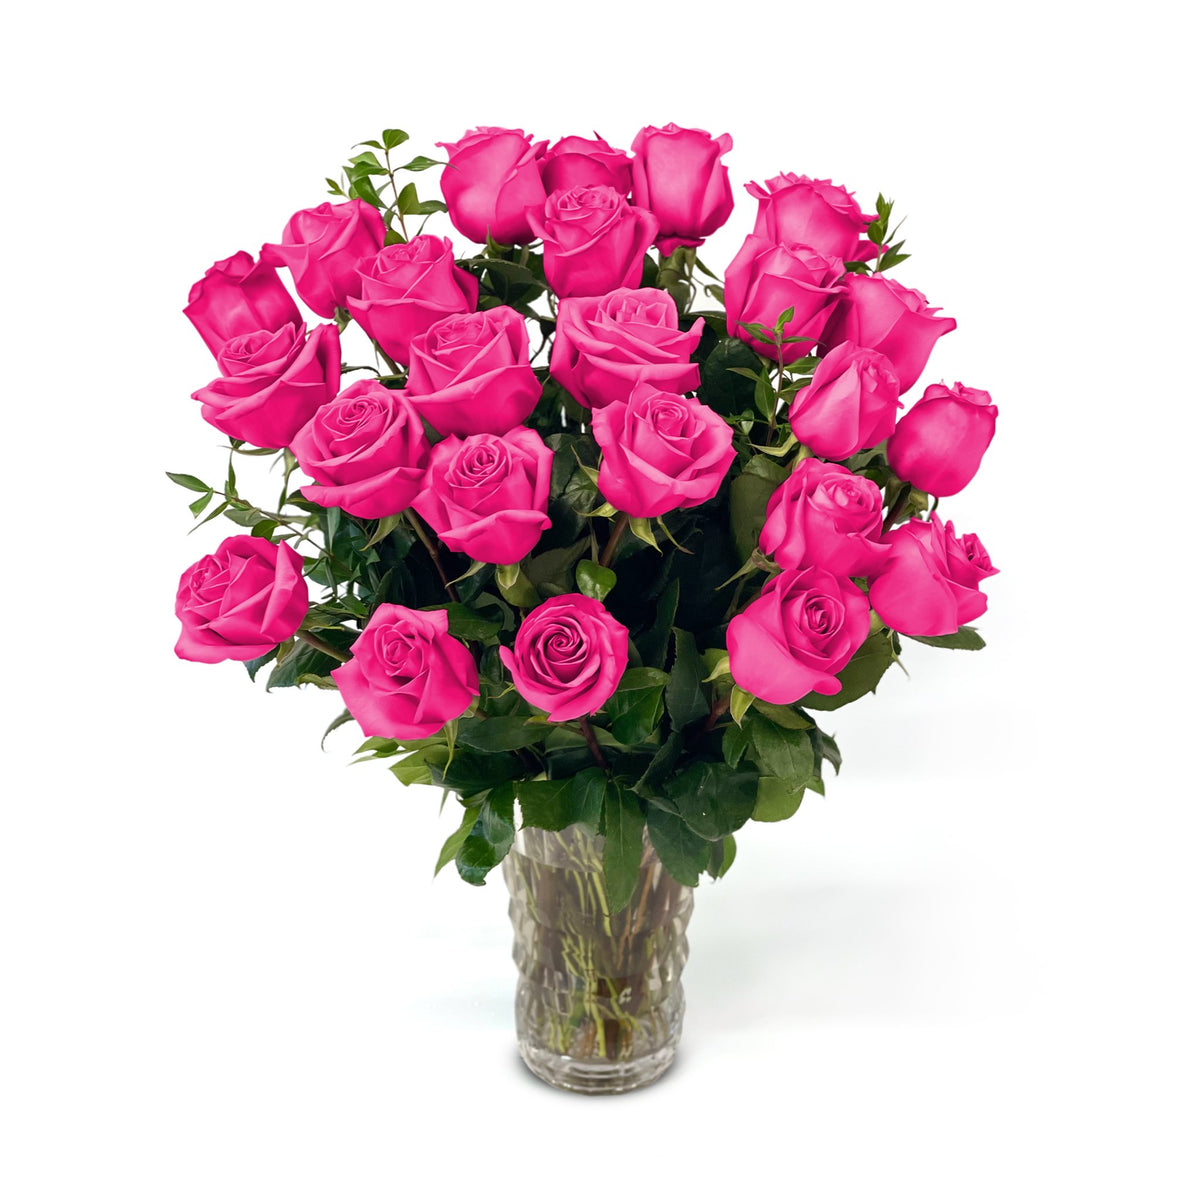 Fresh Roses in a Crystal Vase | Hot Pink - 2 Dozen - Roses